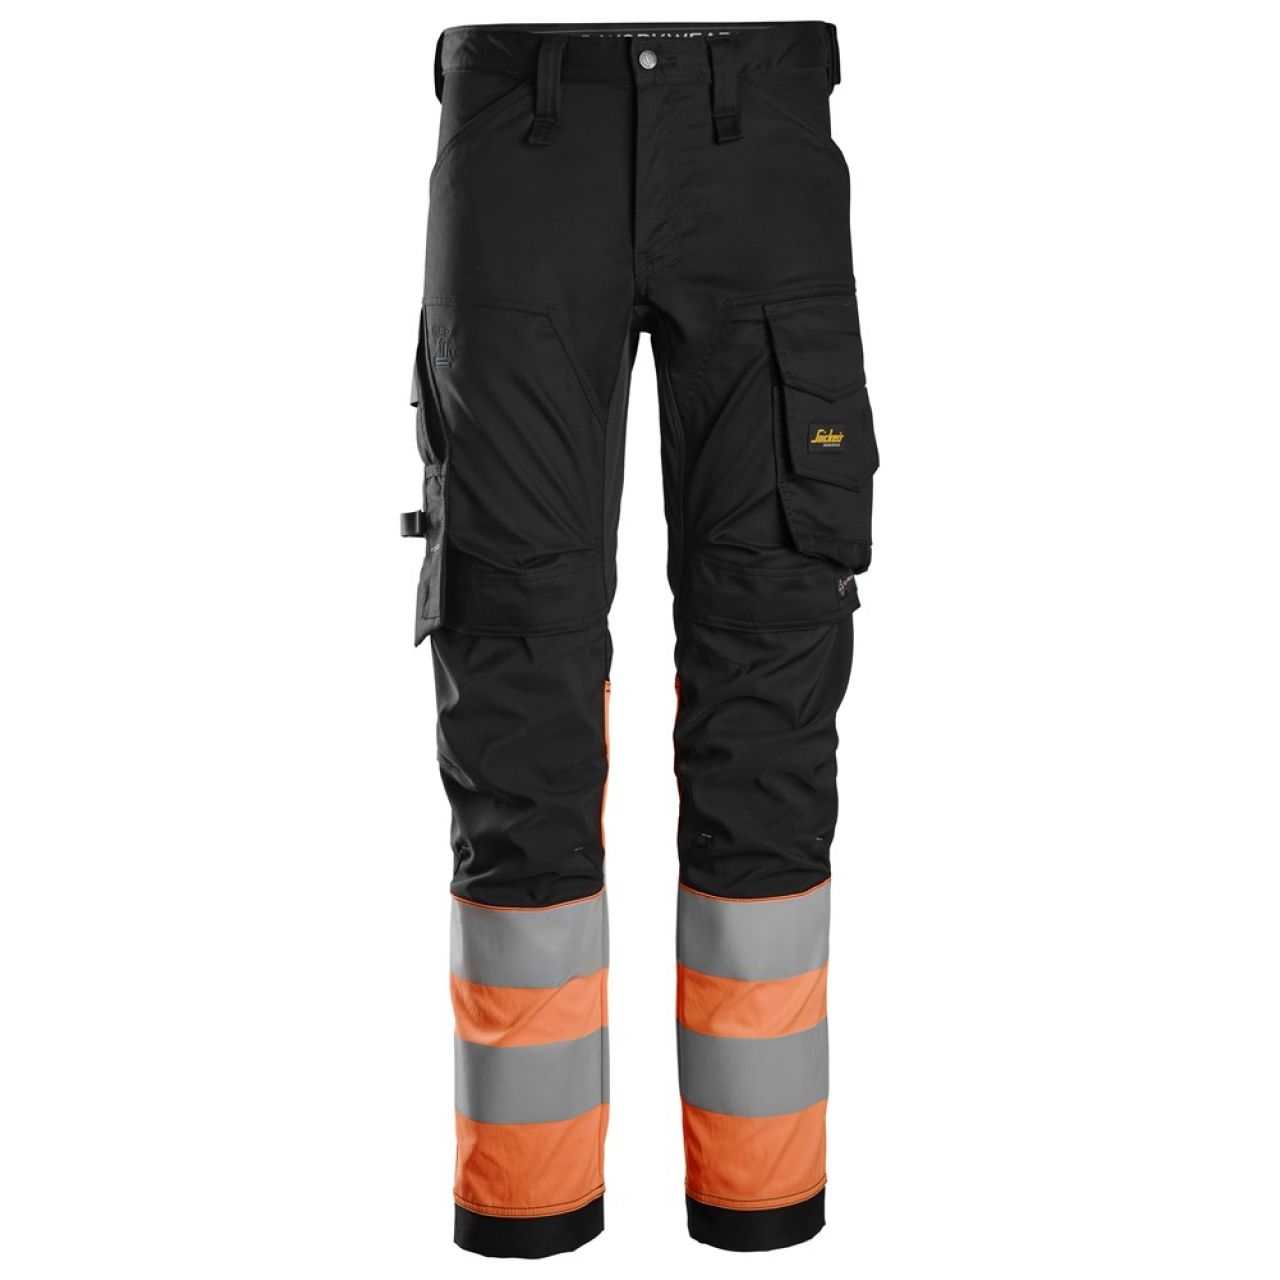 6334 Pantalones largos de trabajo elásticos de alta visibilidad clase 1 negro-naranja talla 156